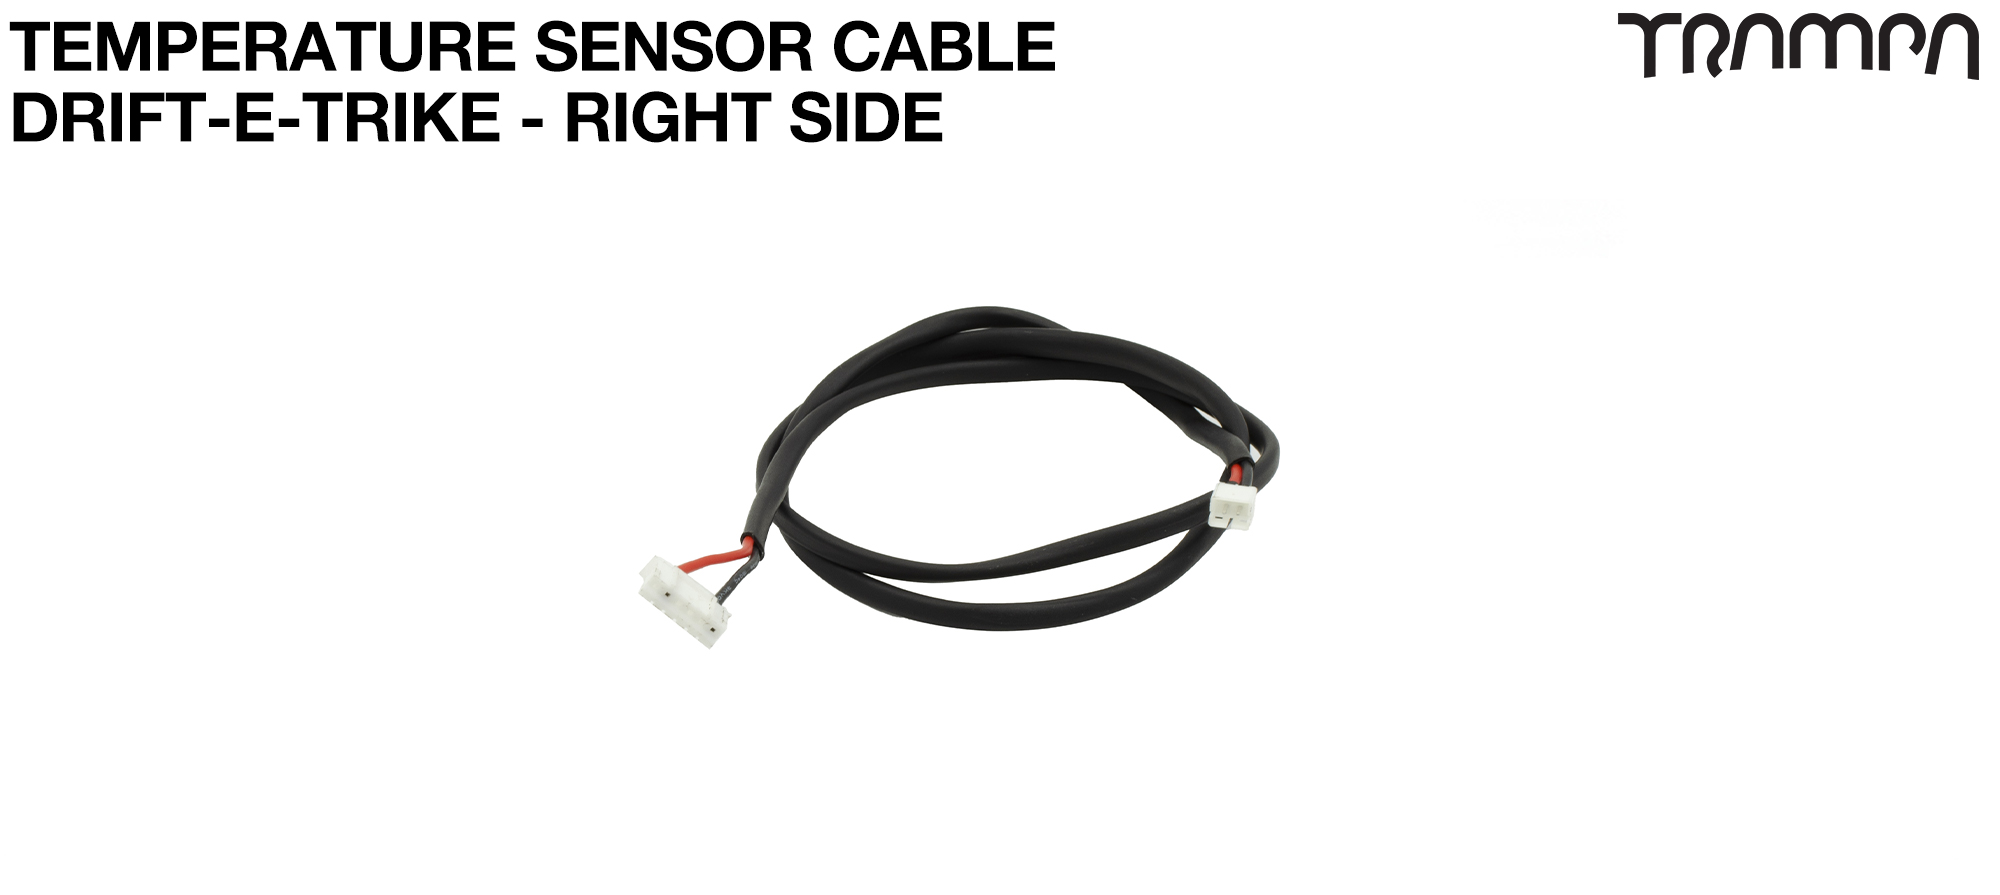 TEMP Sensor Cable DRIFT-E-TRIKE - RIGHT Side 440mm 